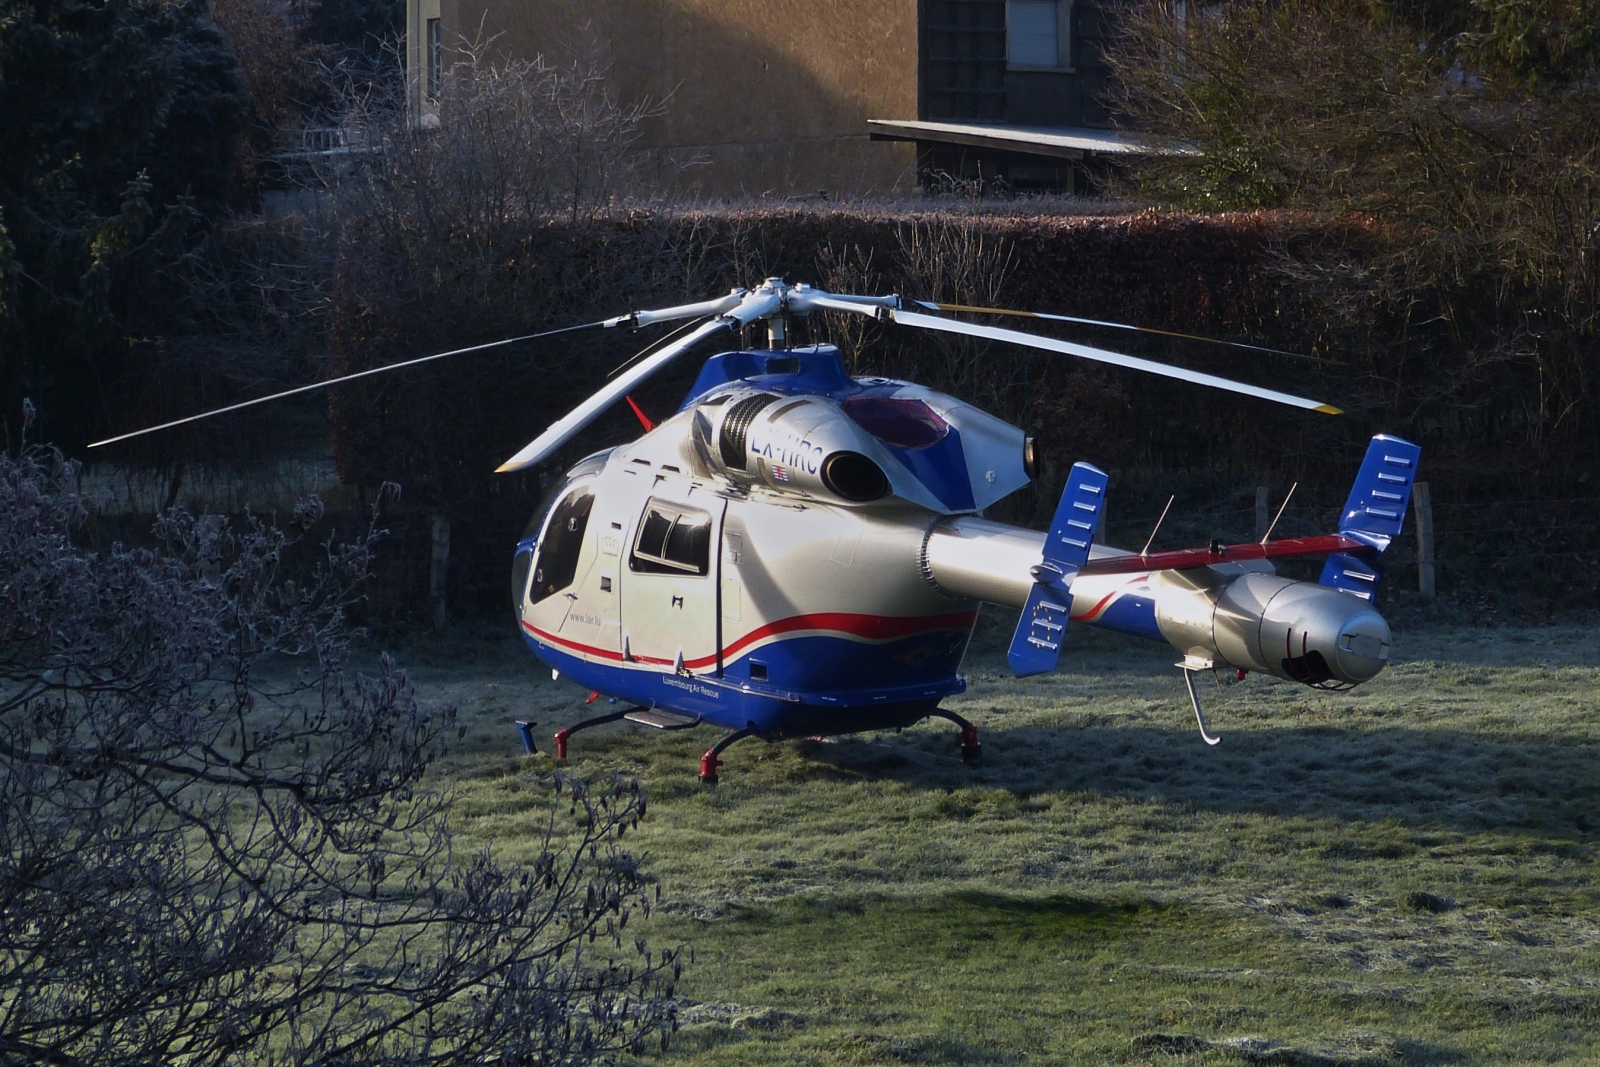 LX-HRC, McDonnell-Douglas 900 Explorer der Luxemburg Air Rescue, ist zur Abholung von einem Patienten in einer Wiese nahe Wiltz gelandet. 12.2022

